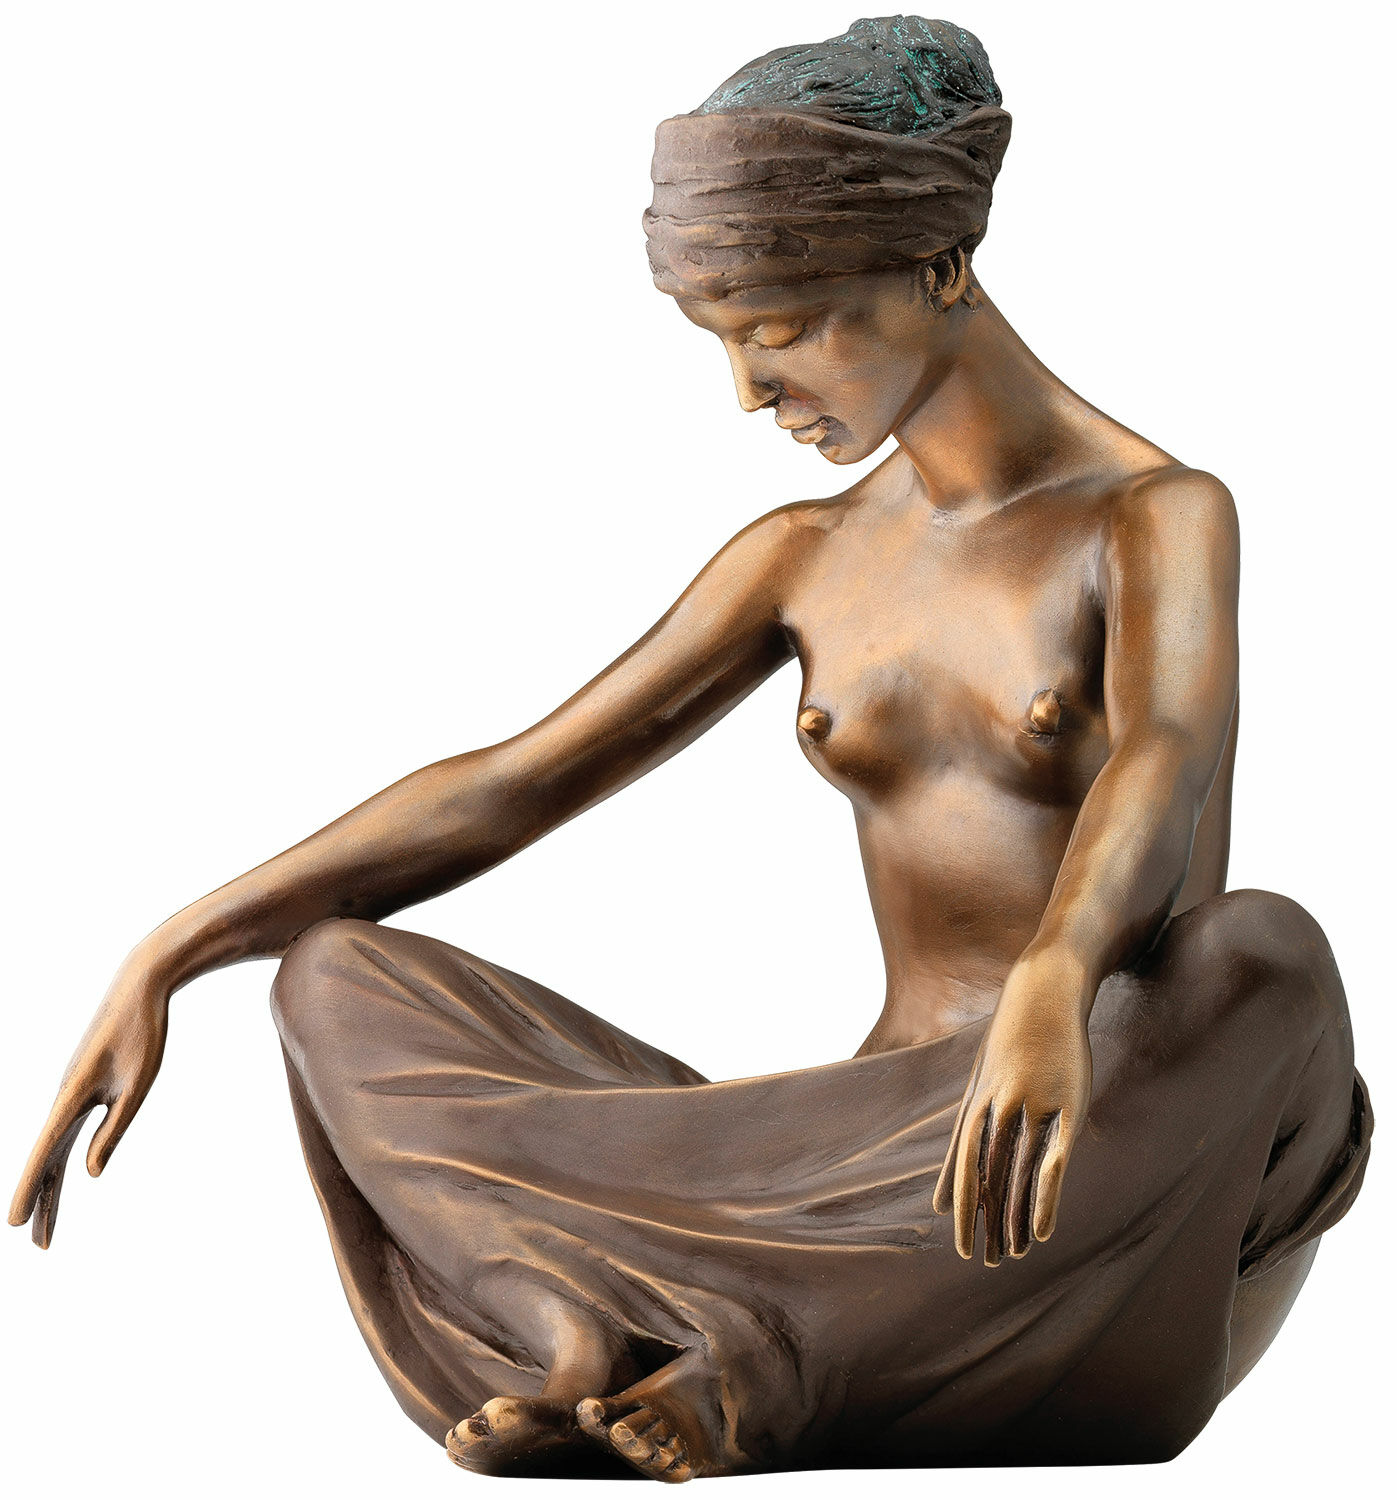 Sculpture "Waves", bronze version by Erwin A. Schinzel